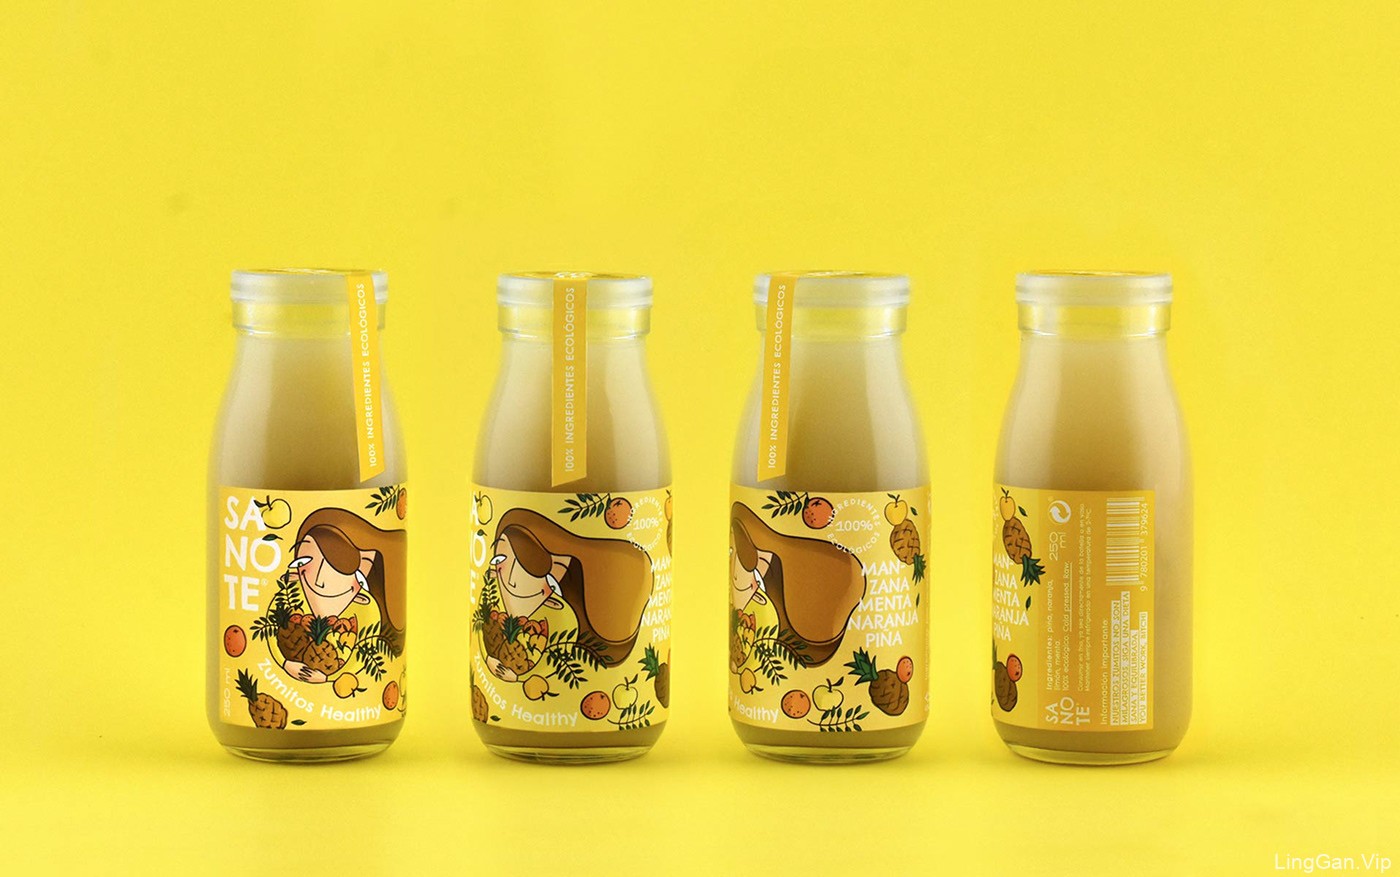 Sanote Zumitos Healthy果汁包装设计